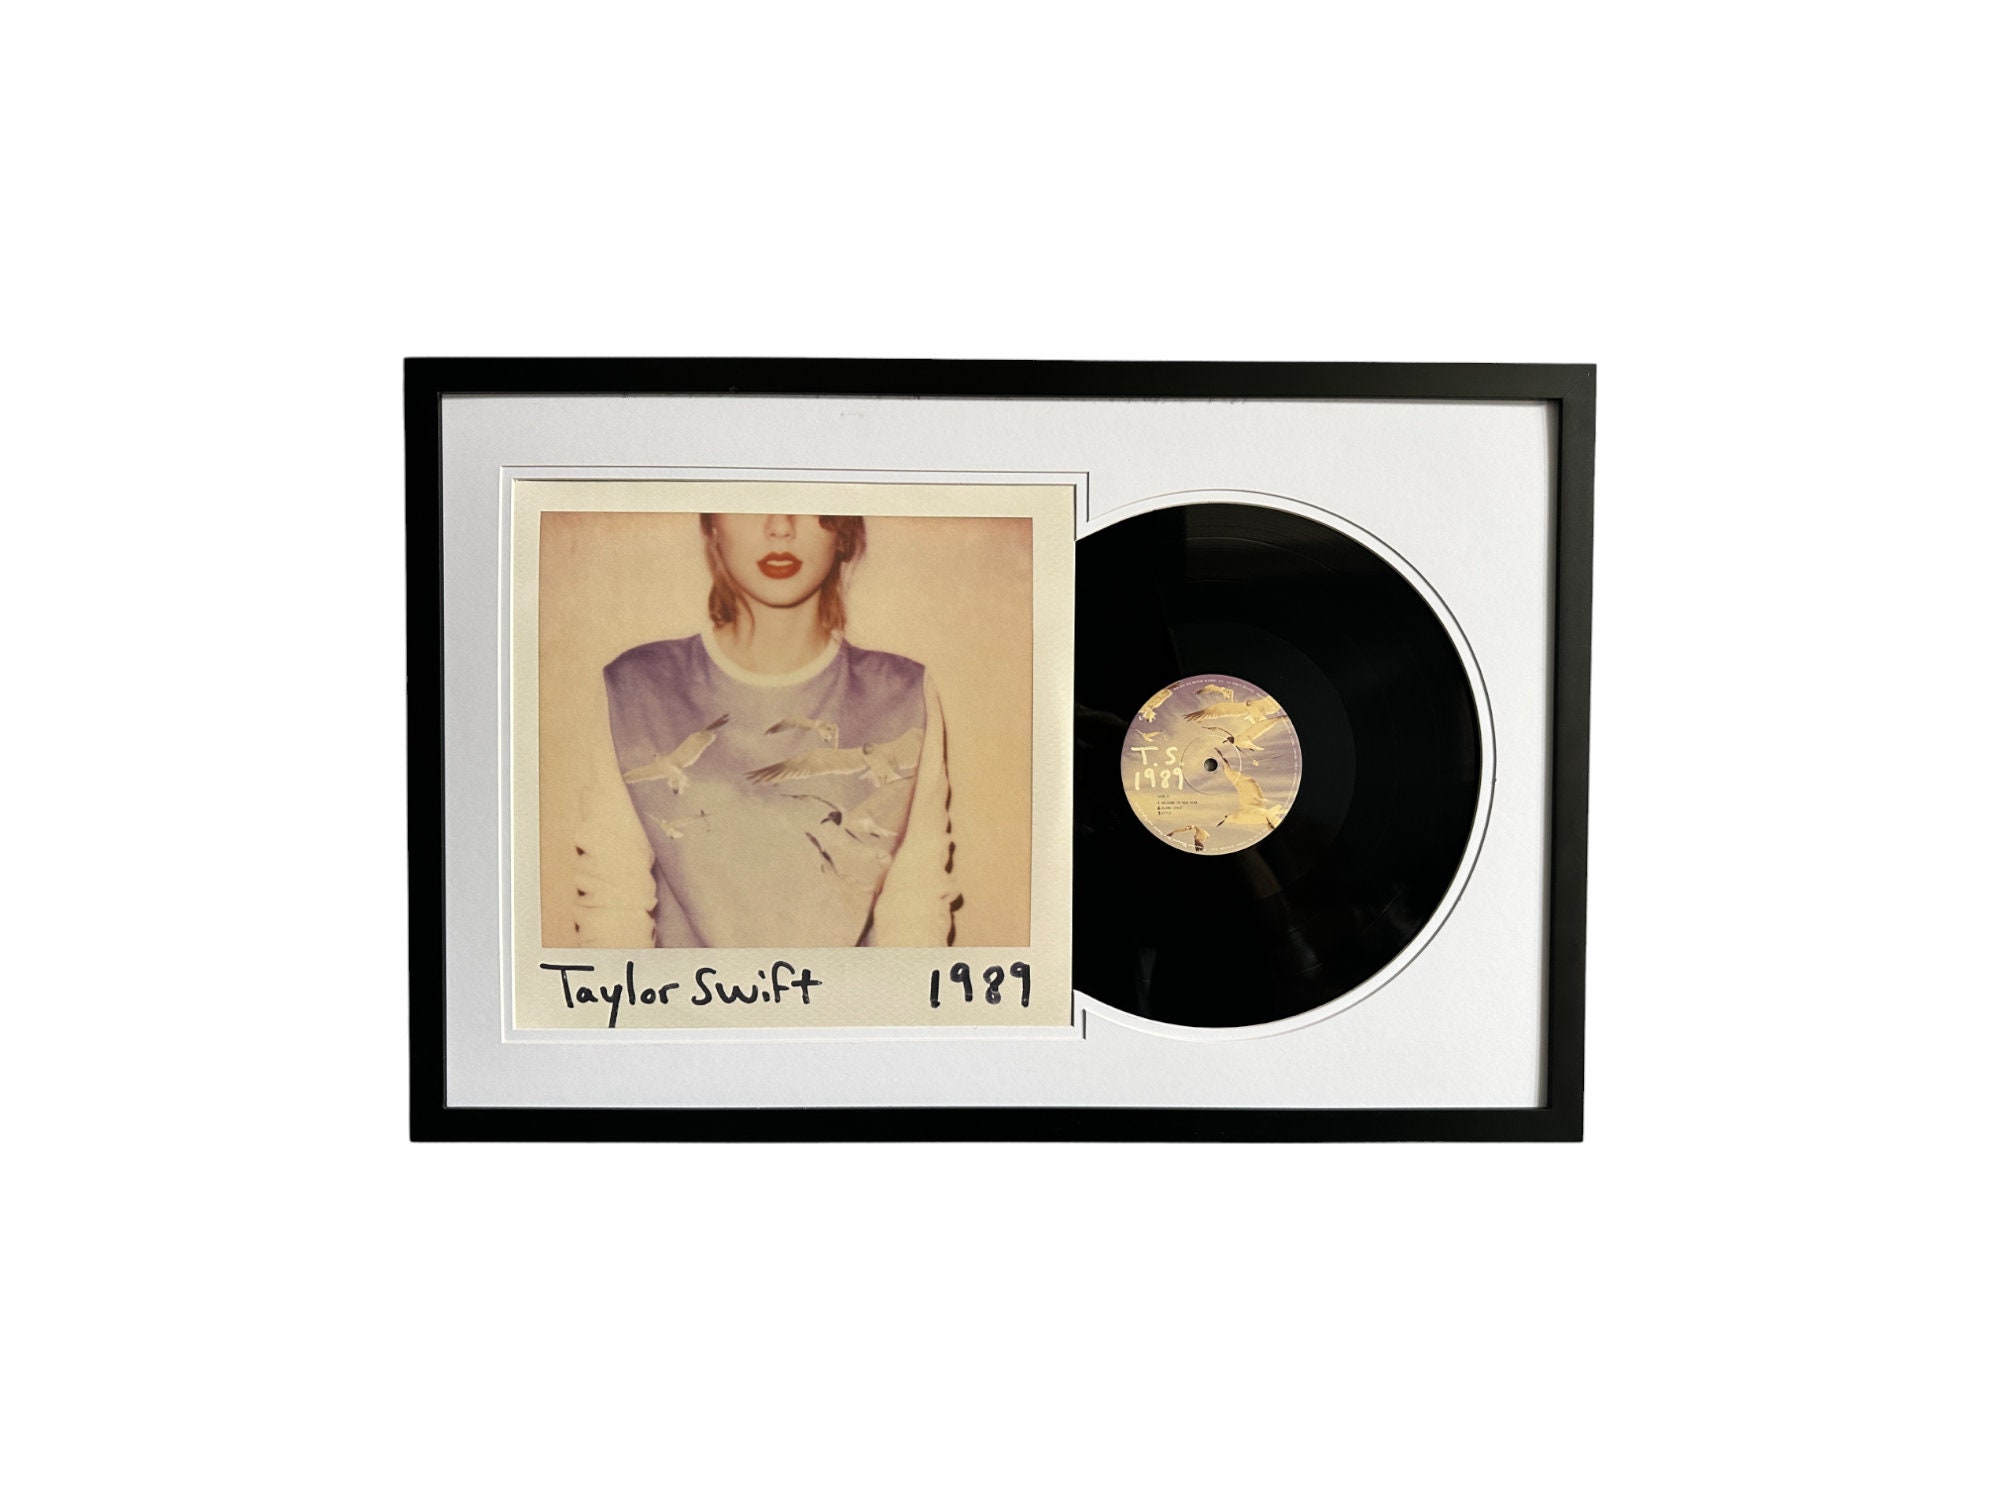 Mini Vinyl Lover Taylor Swift -  Denmark